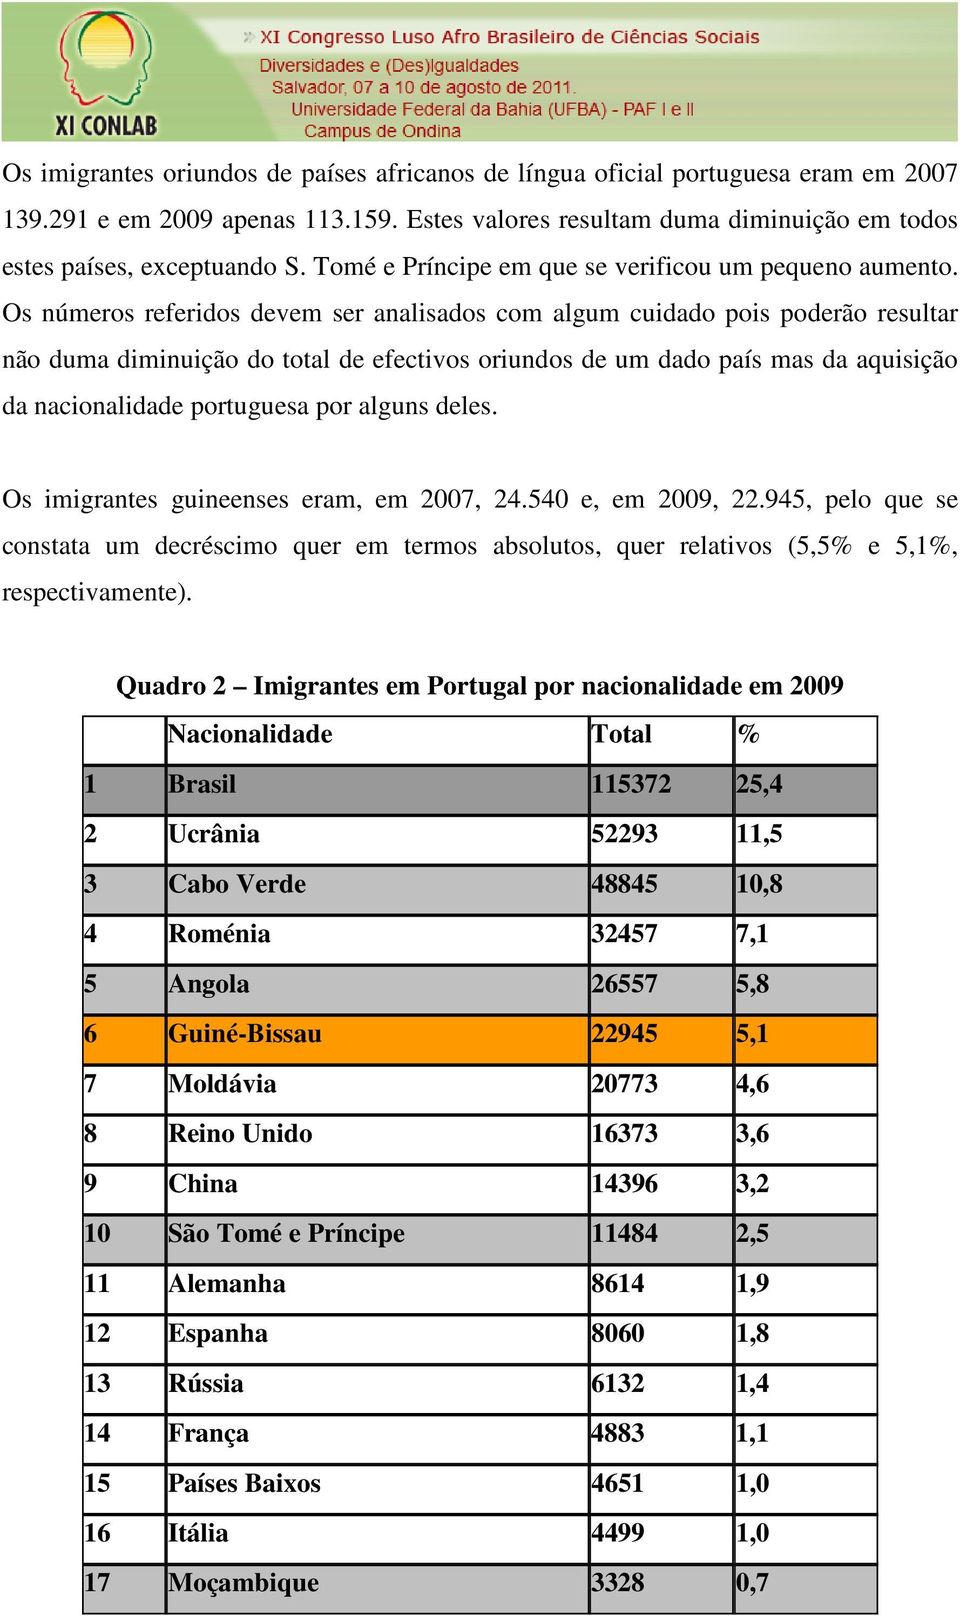 Os números referidos devem ser analisados com algum cuidado pois poderão resultar não duma diminuição do total de efectivos oriundos de um dado país mas da aquisição da nacionalidade portuguesa por